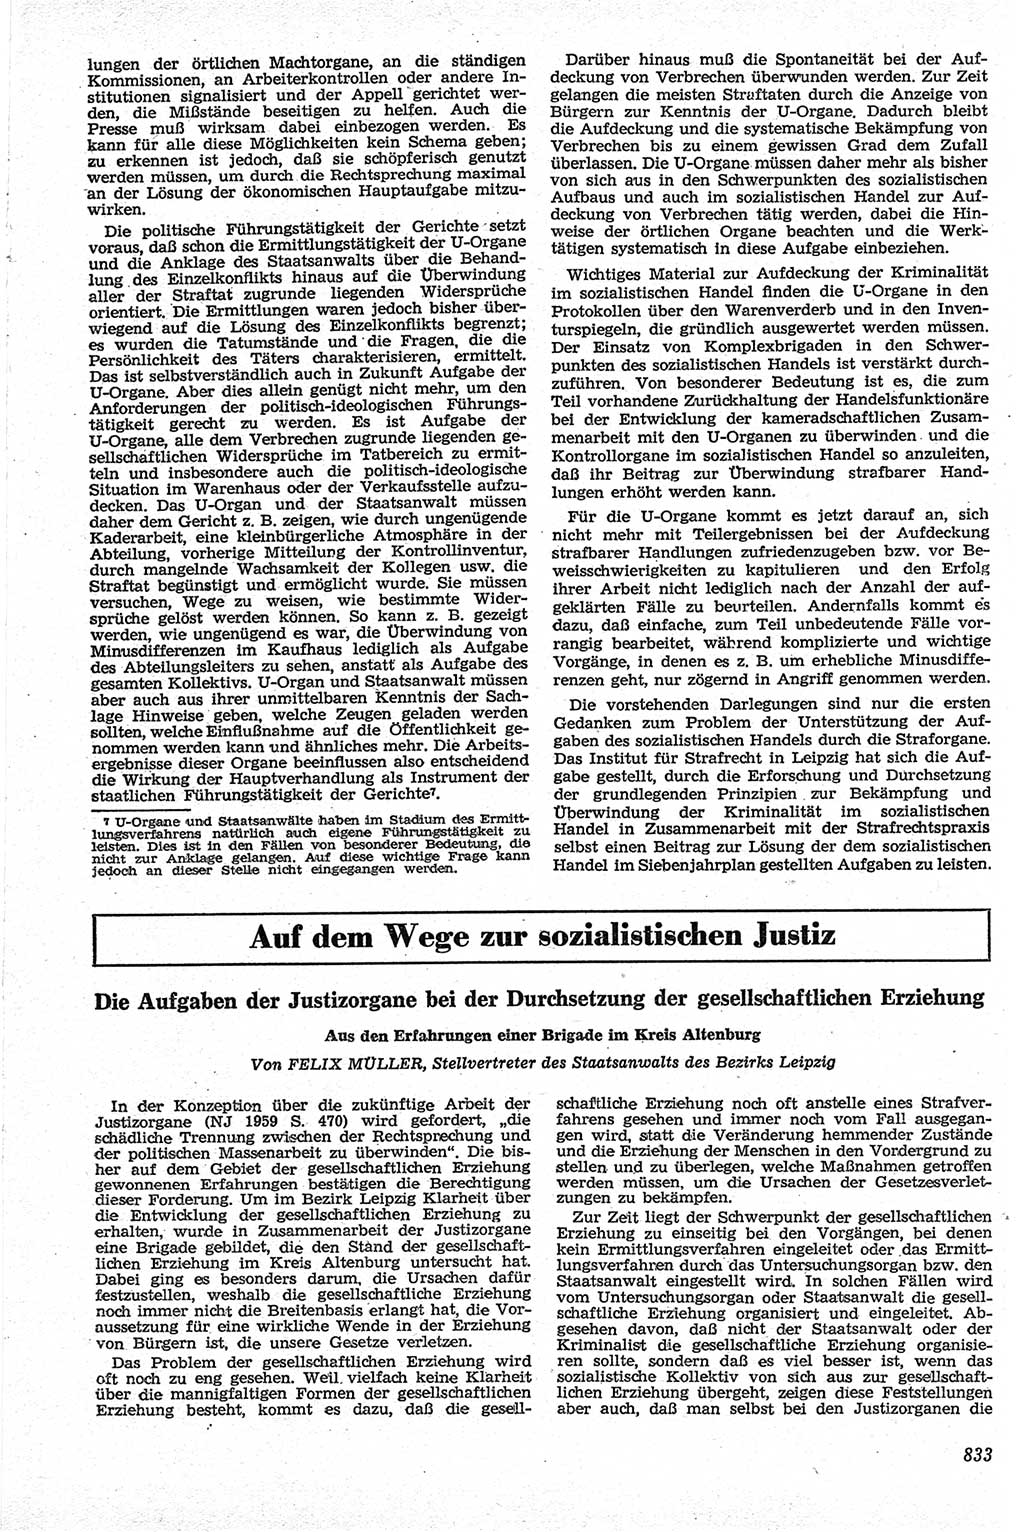 Neue Justiz (NJ), Zeitschrift für Recht und Rechtswissenschaft [Deutsche Demokratische Republik (DDR)], 13. Jahrgang 1959, Seite 833 (NJ DDR 1959, S. 833)